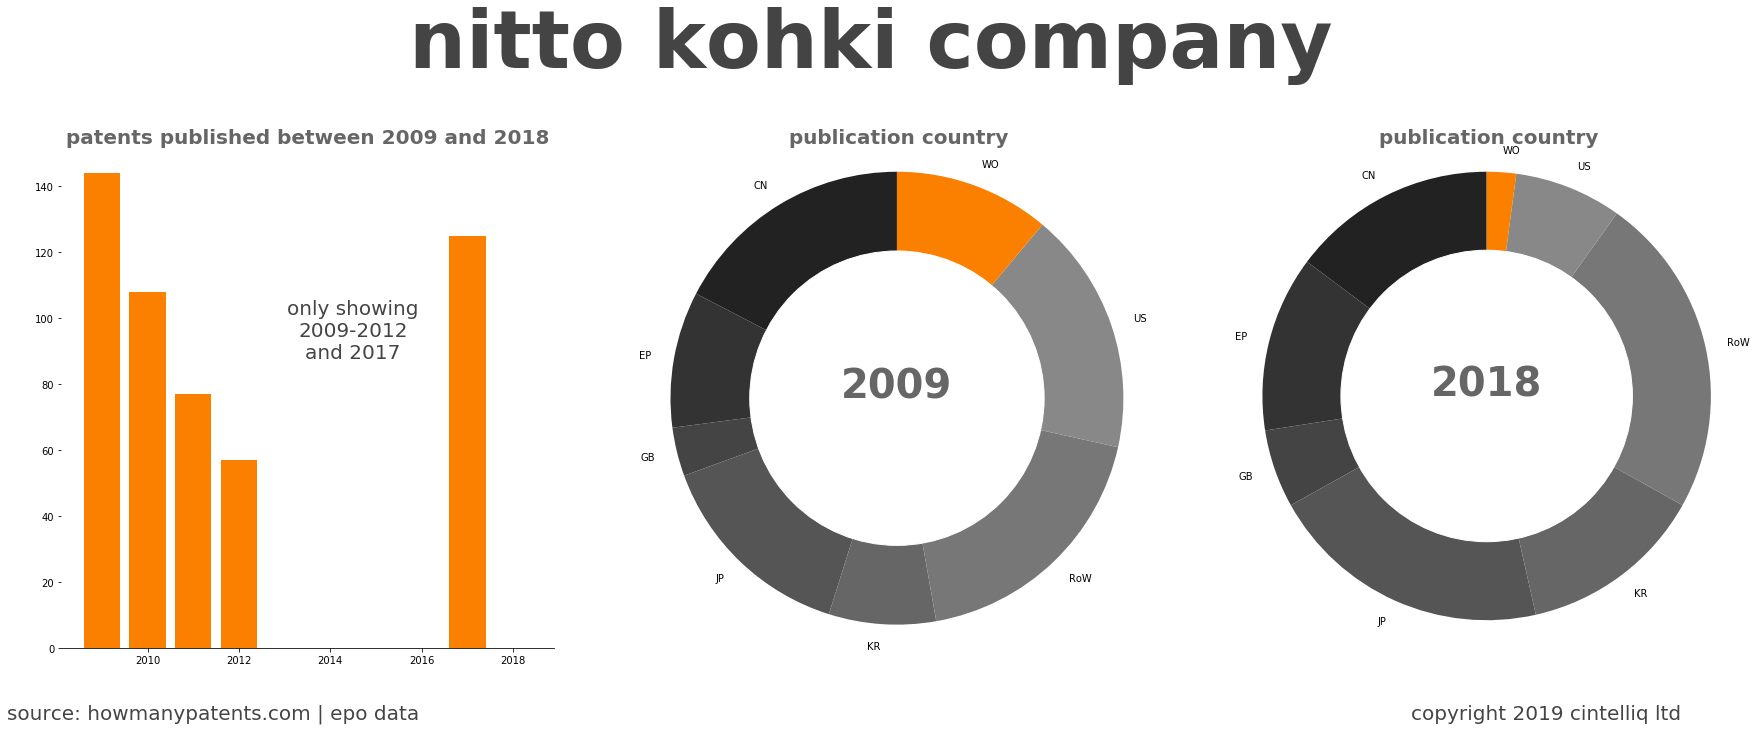 summary of patents for Nitto Kohki Company